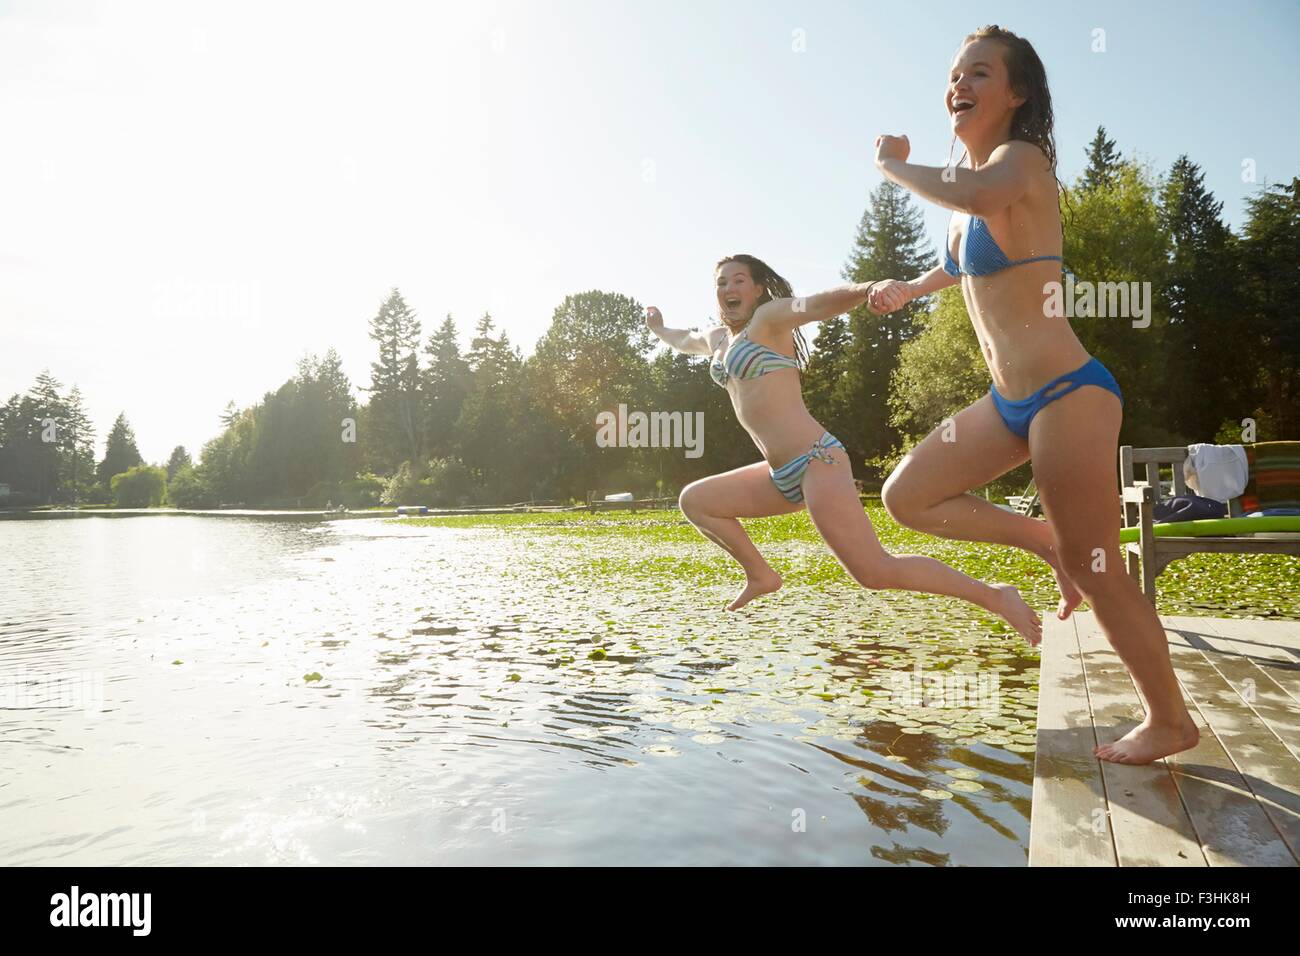 Le ragazze in bikini saltando nel lago, Seattle, Washington, Stati Uniti d'America Foto Stock